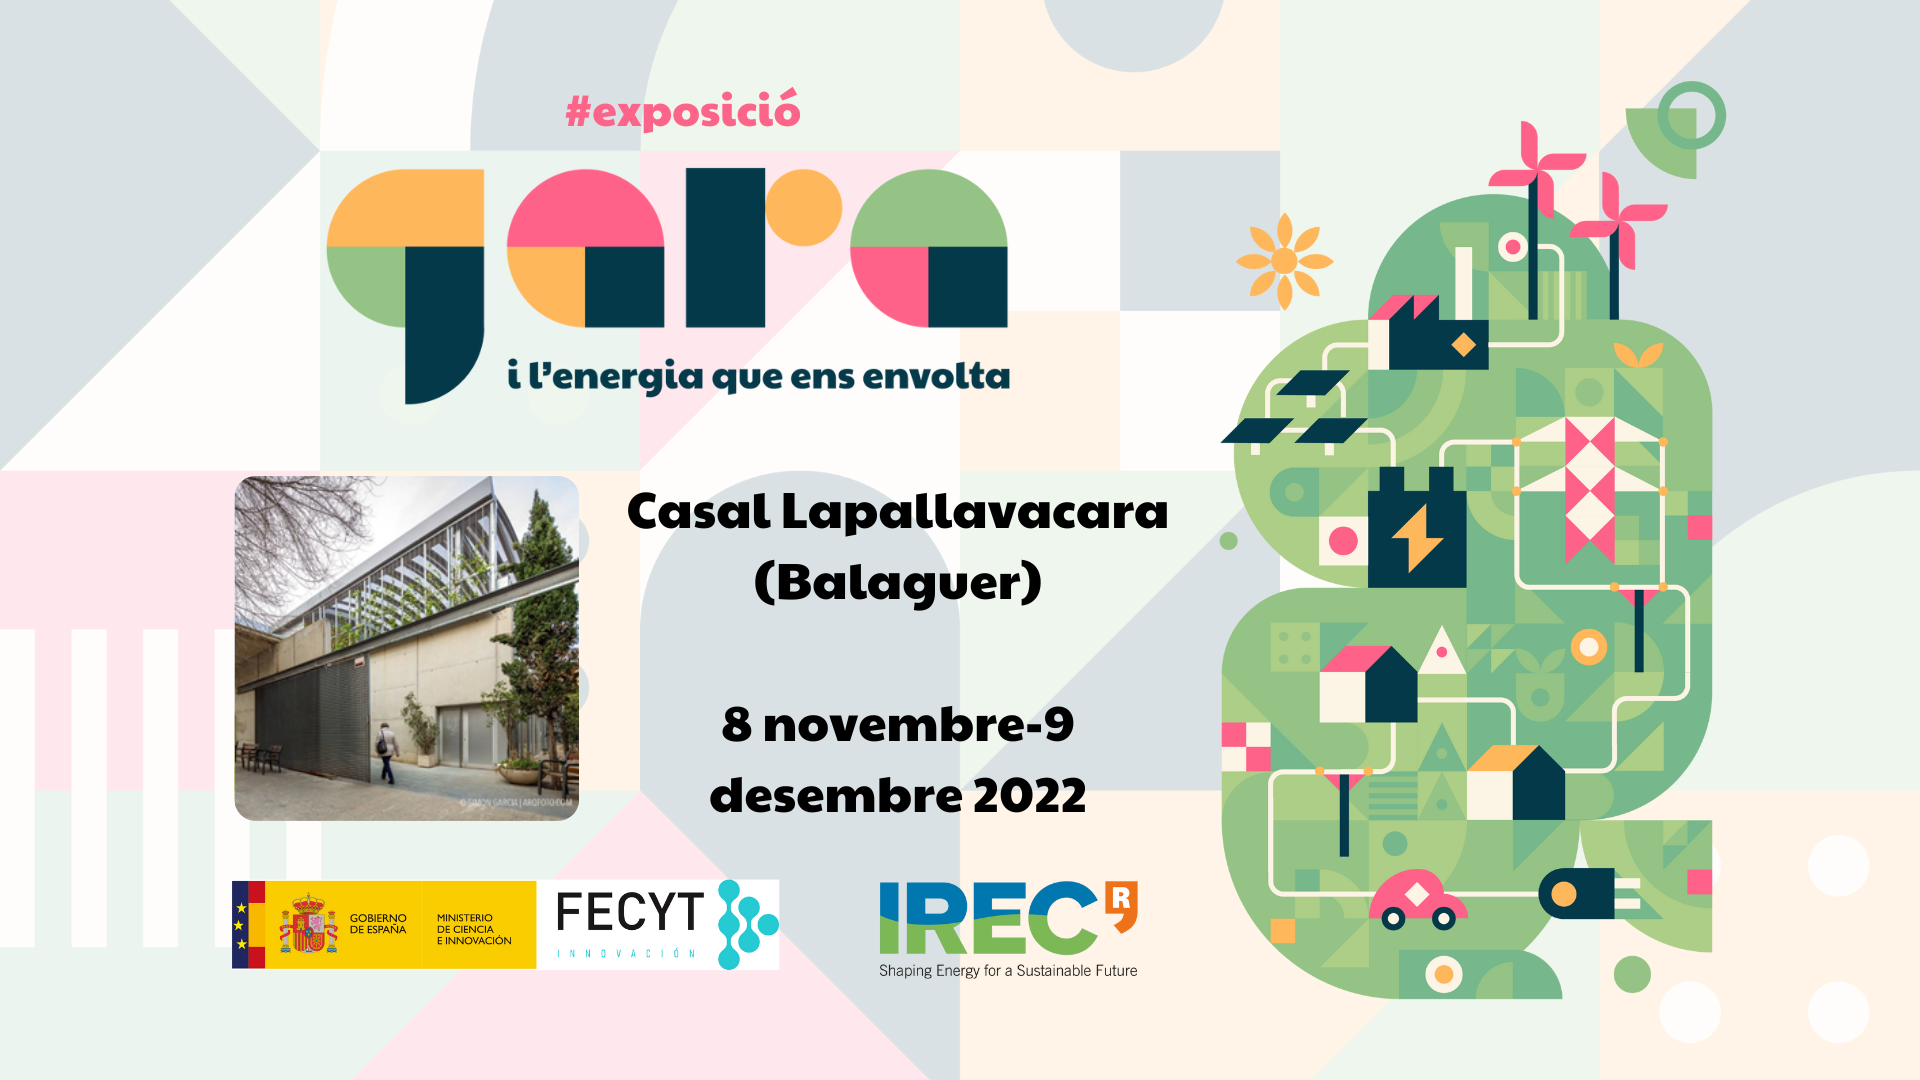 Exposició “Gara i l’energia que ens envolta 3.0”- Casal Lapallavacara - Balaguer